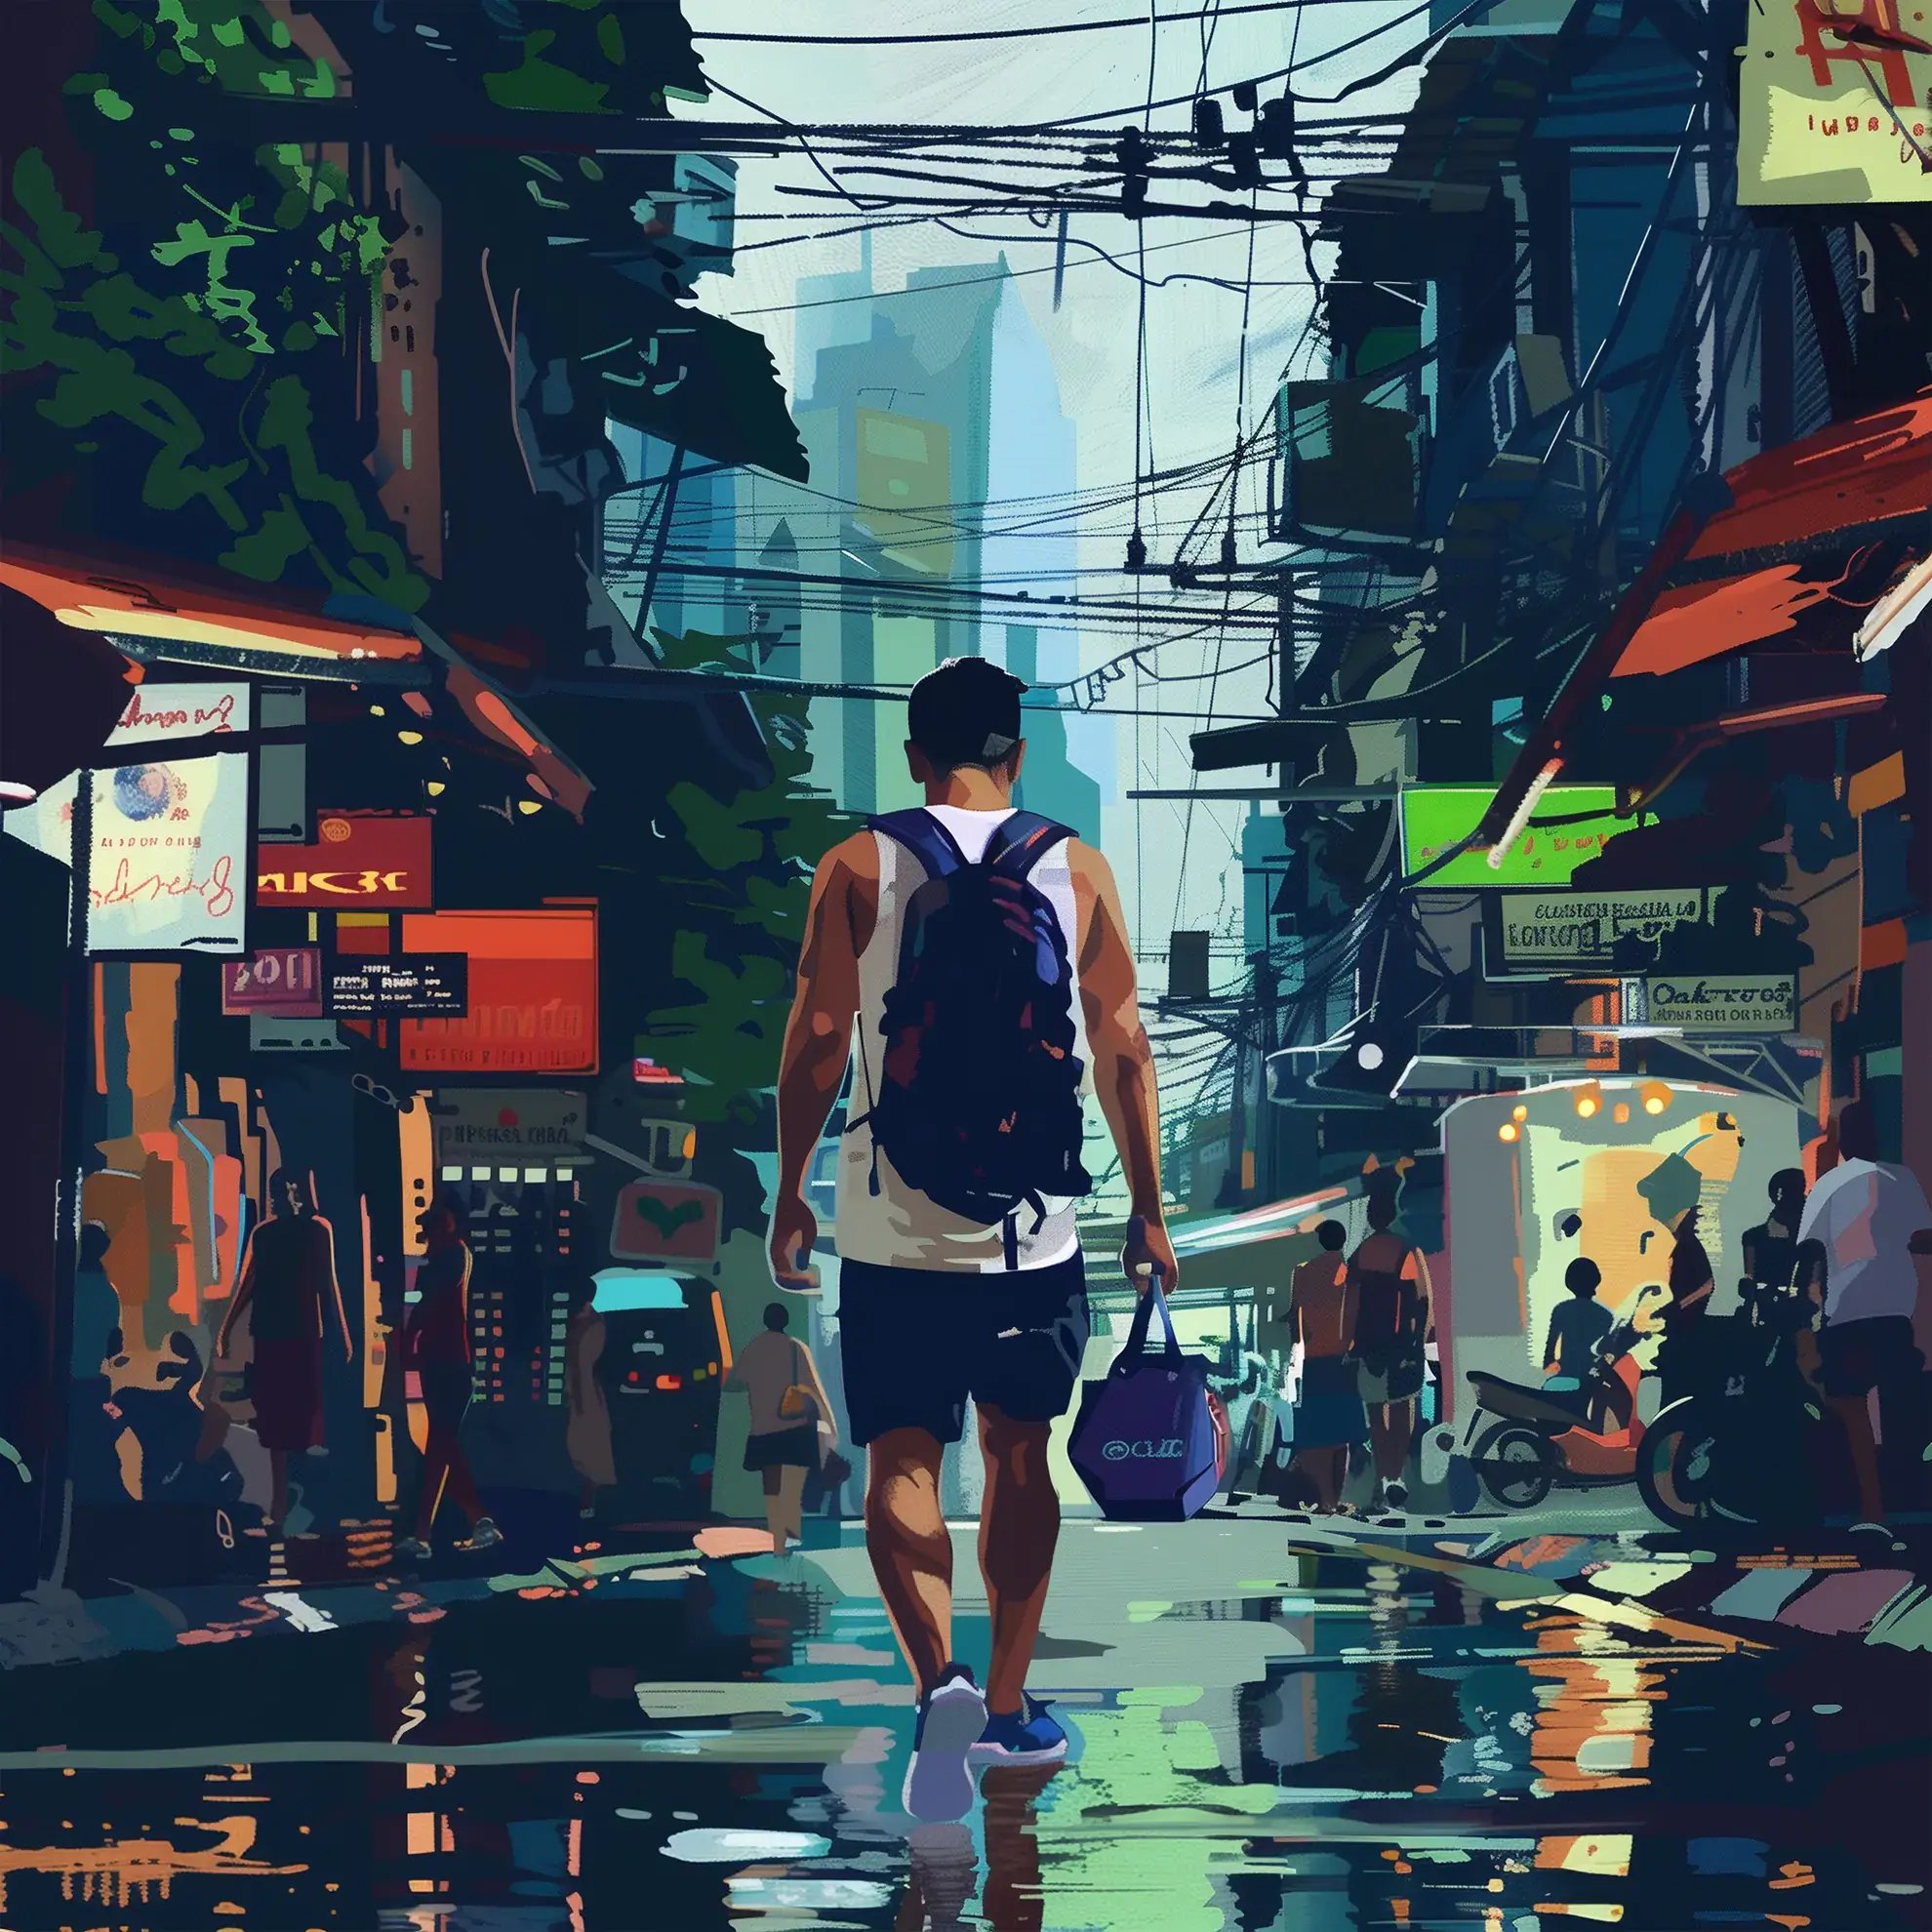 Мужчина уверенно идет по шумным улицам Бангкока, энергия города отражается в ярких цветах и ​​отражениях мокрого тротуара. 
Городской пейзаж наполнен духом боевых искусств, что свидетельствует о приверженности города образу жизни BJJ среди его традиционных корней в тайском боксе.